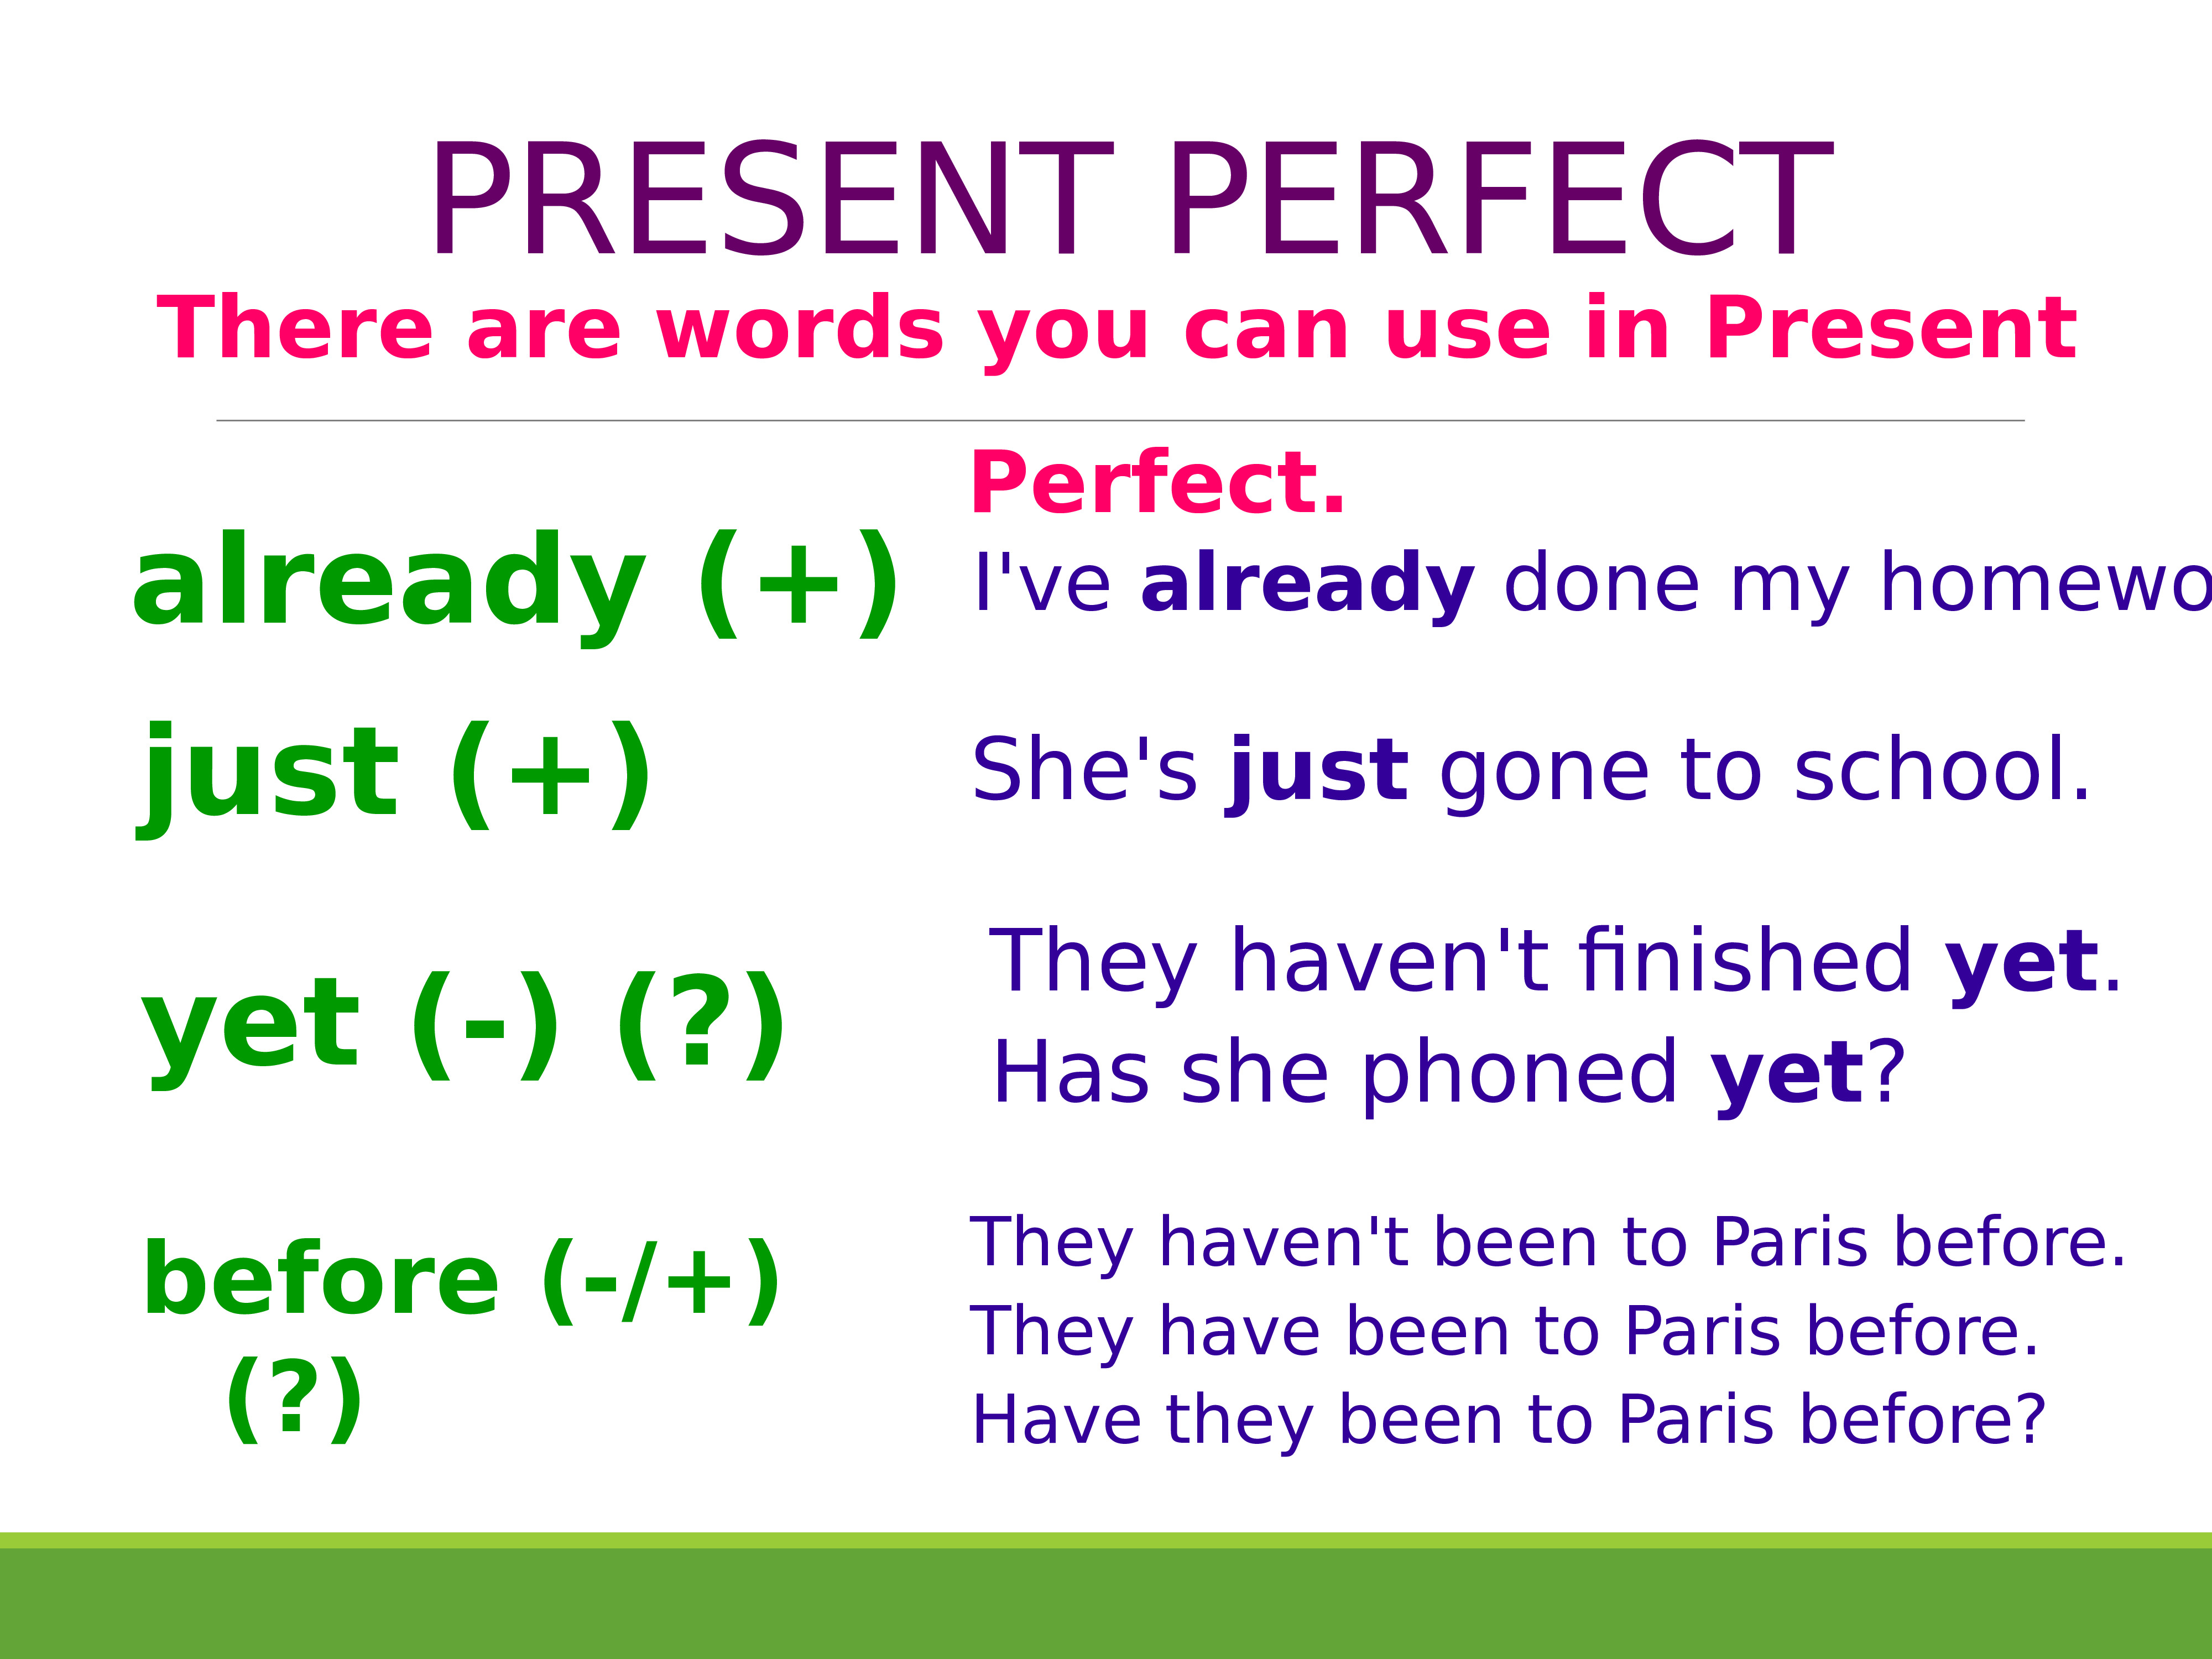 7 предложений презент перфект. Present perfect simple образование. Present perfect Tense правило. Правило англ яз present perfect. Present perfect Tense образование.